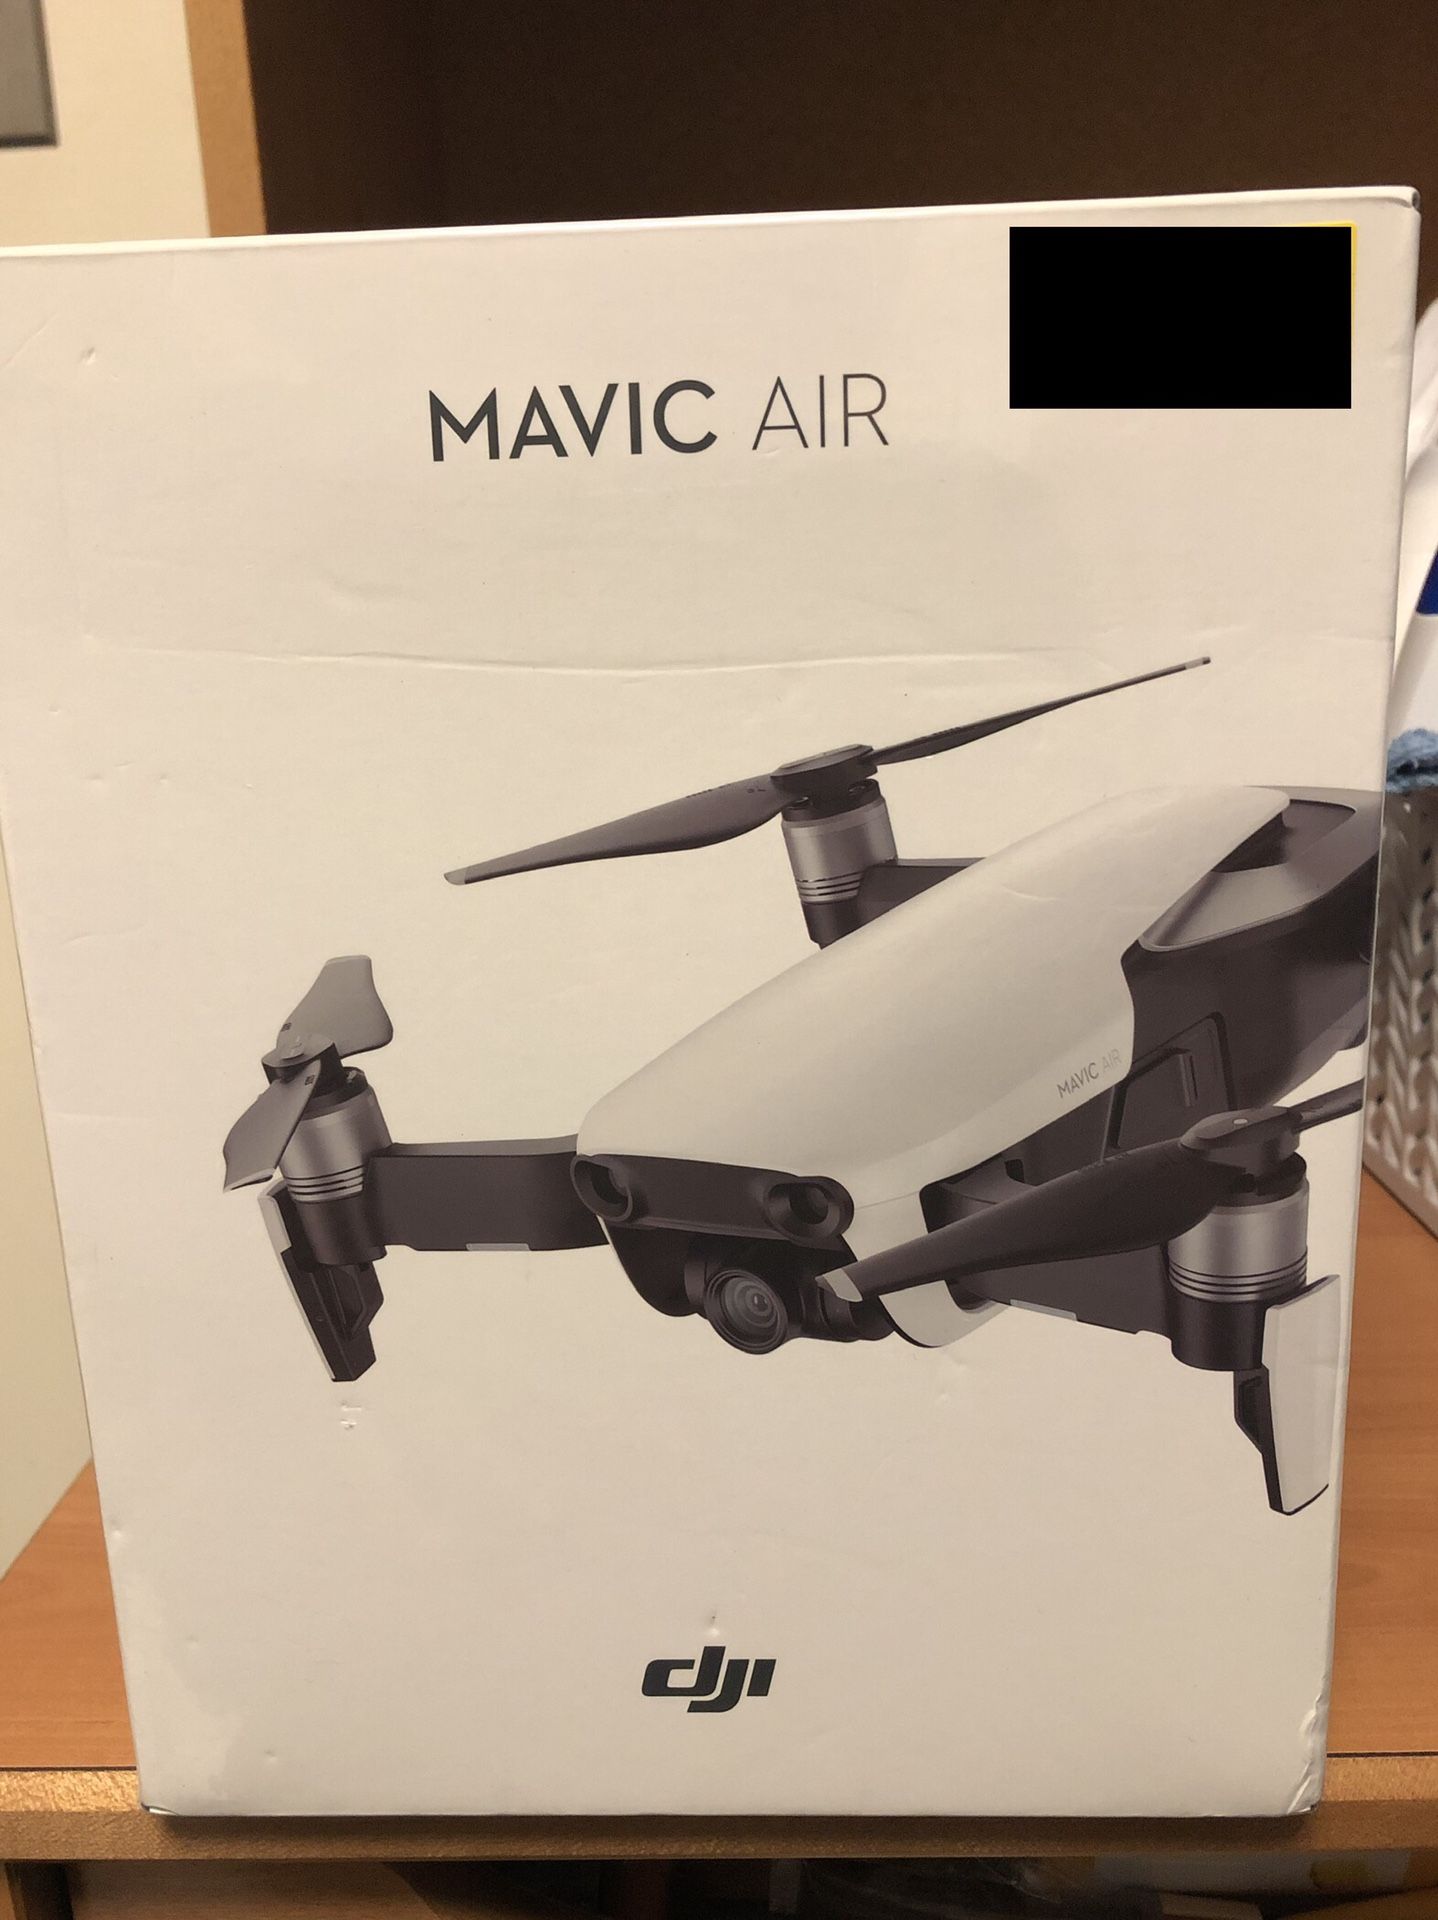 MAVIC AIR DRONE!!! ($500 NEW)